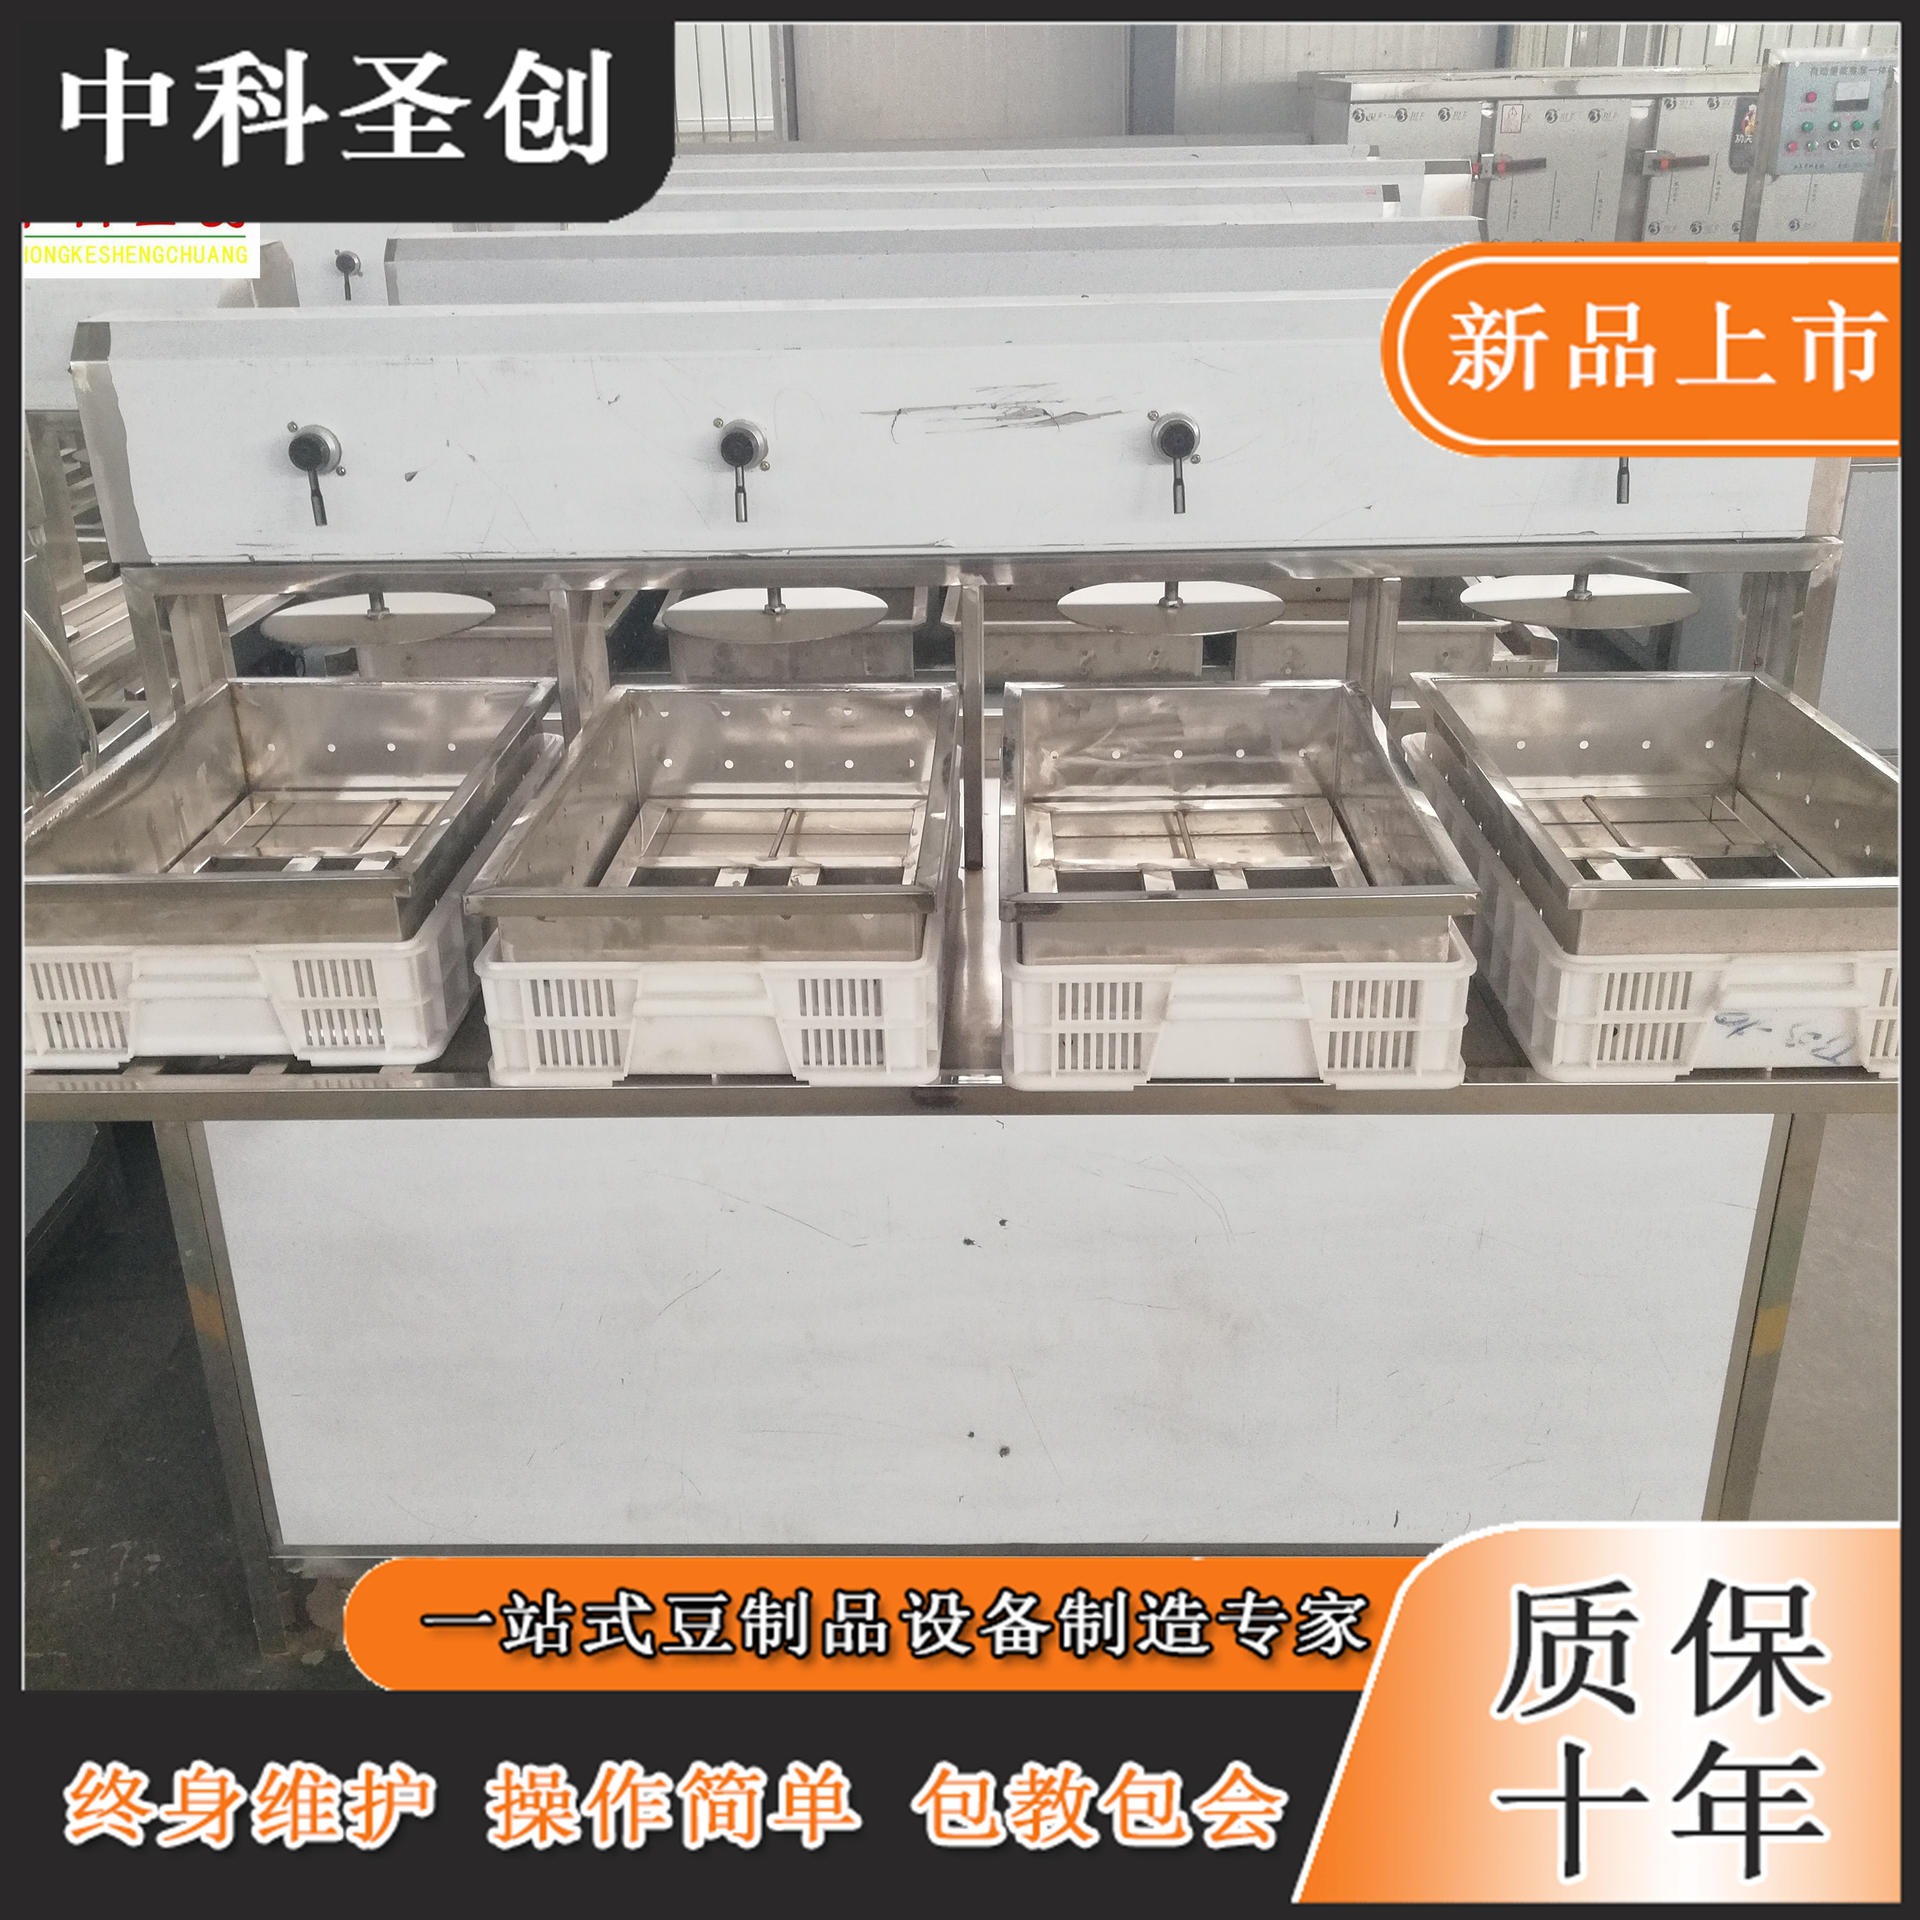 温州做豆腐全过程成套设备 多功能豆腐加工机 做豆腐全过程生产线